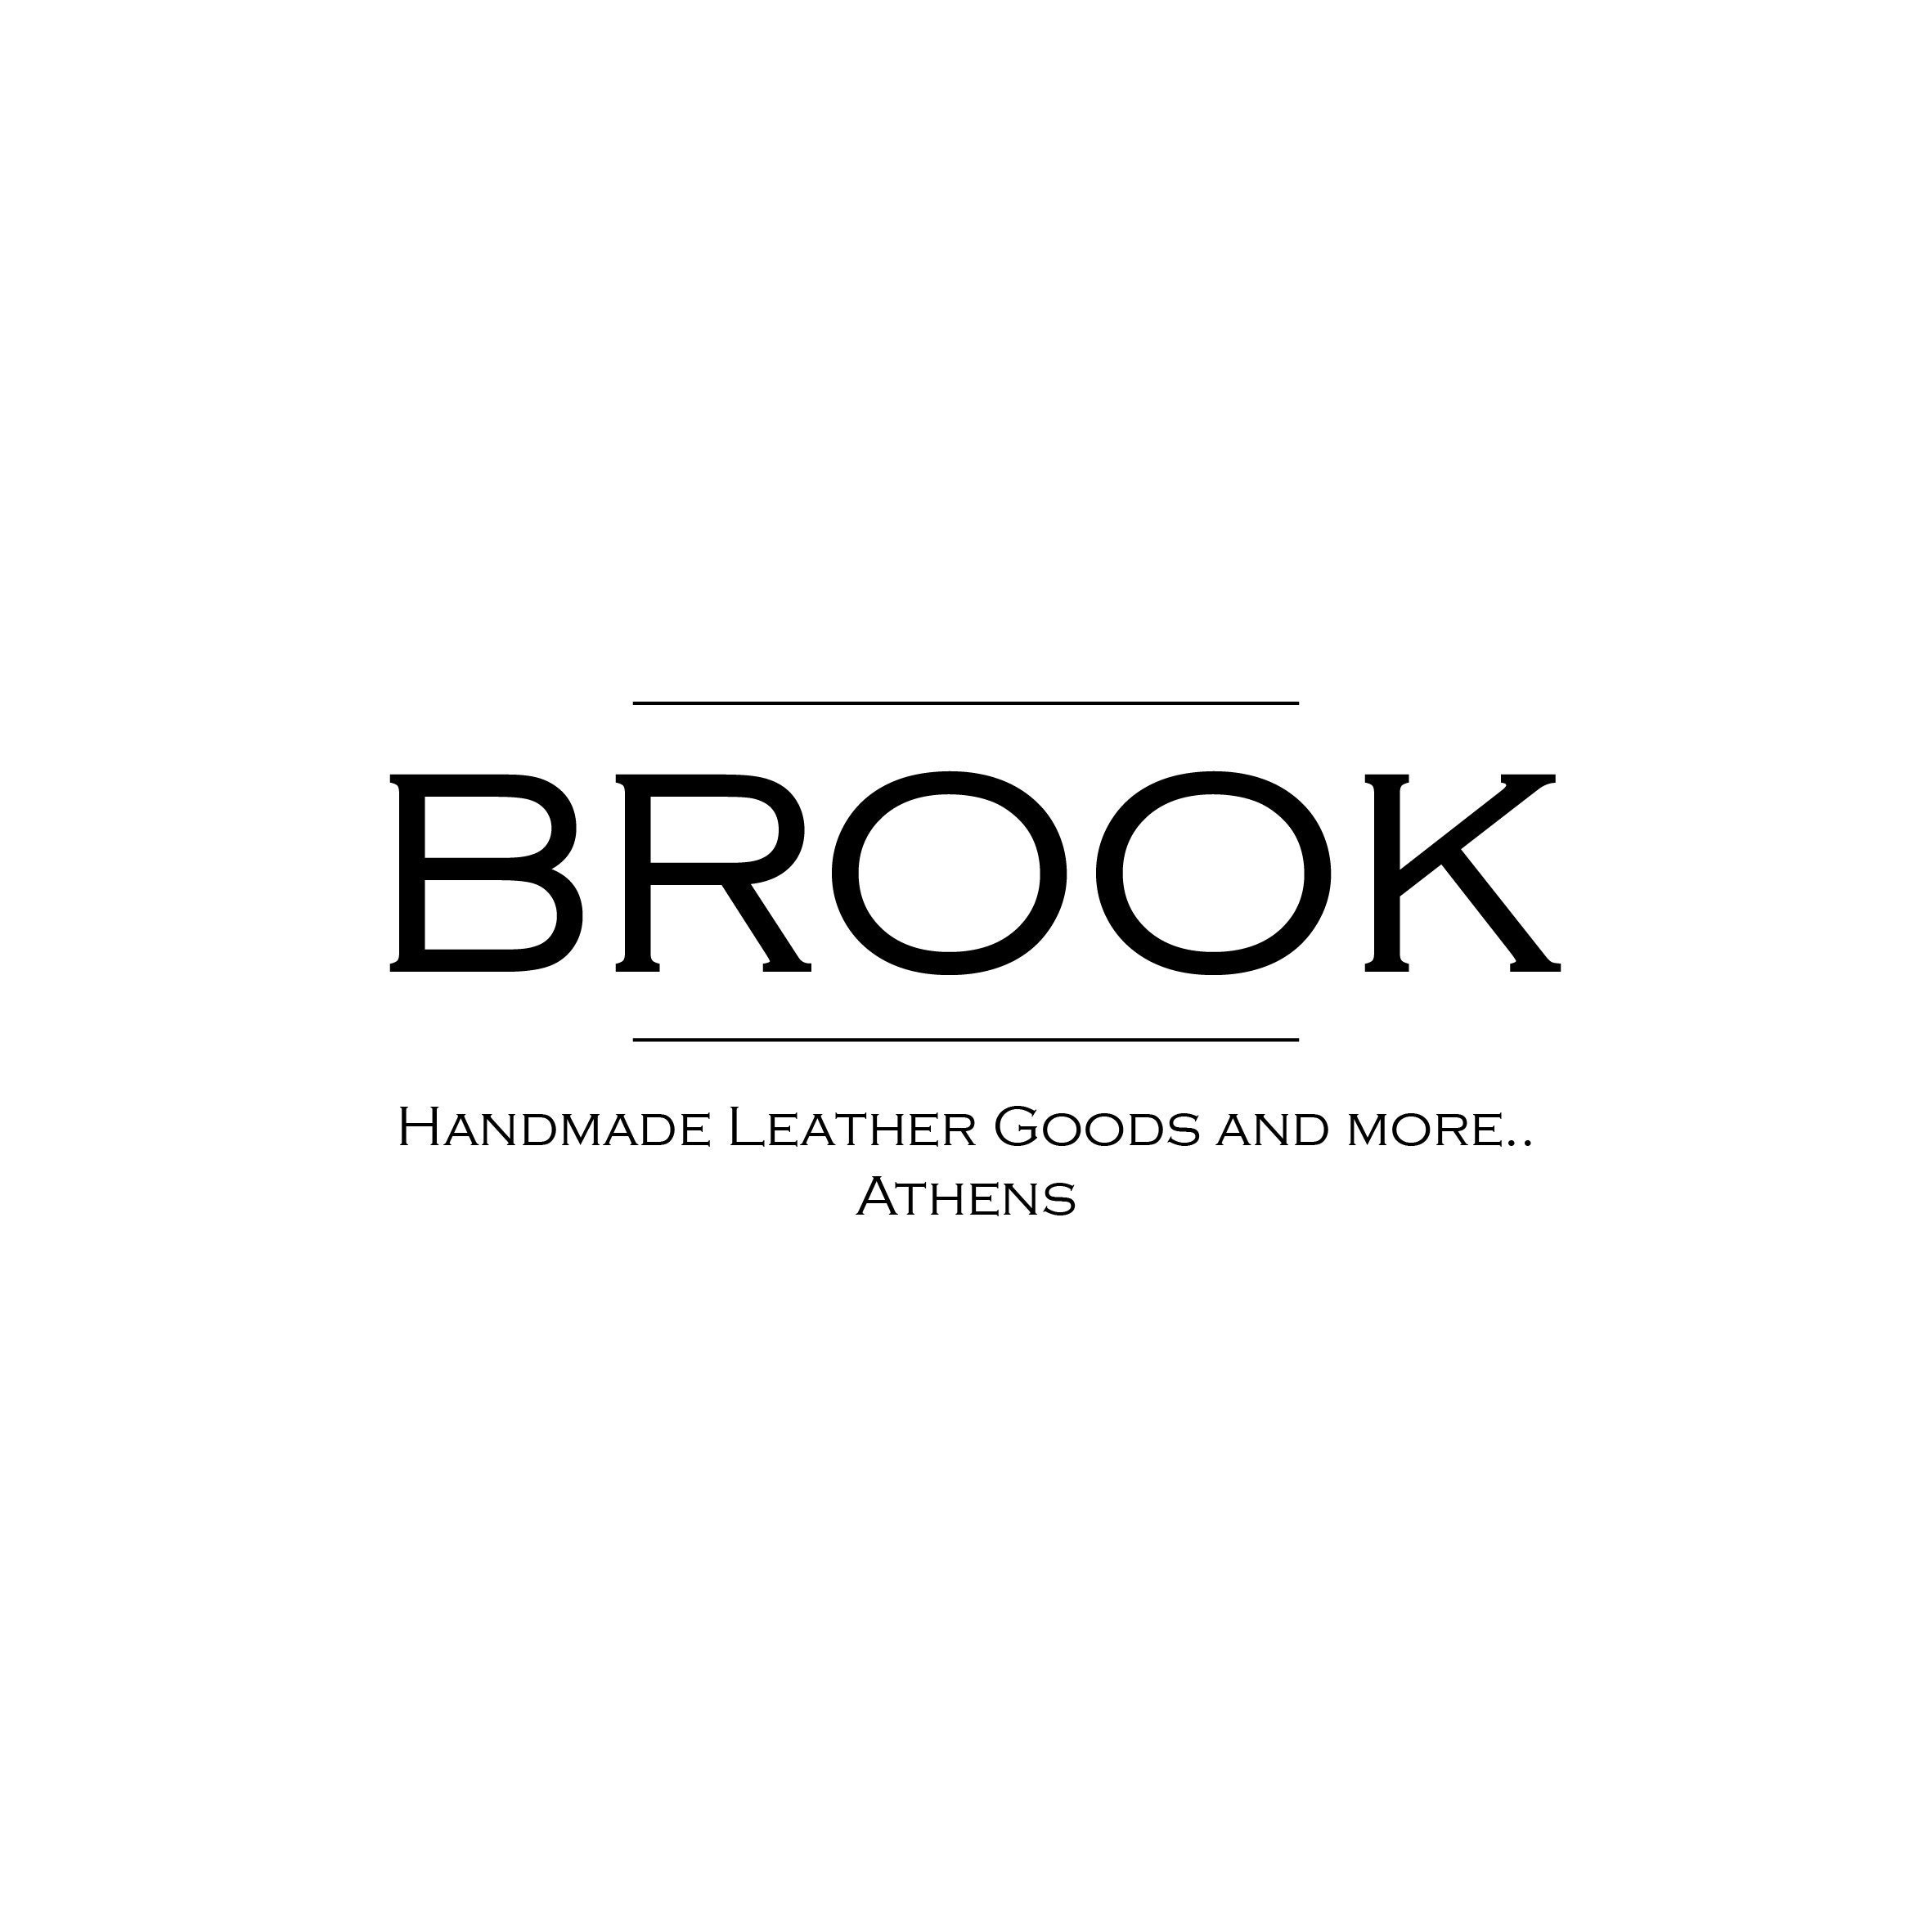 Brookleathergoods - Etsy